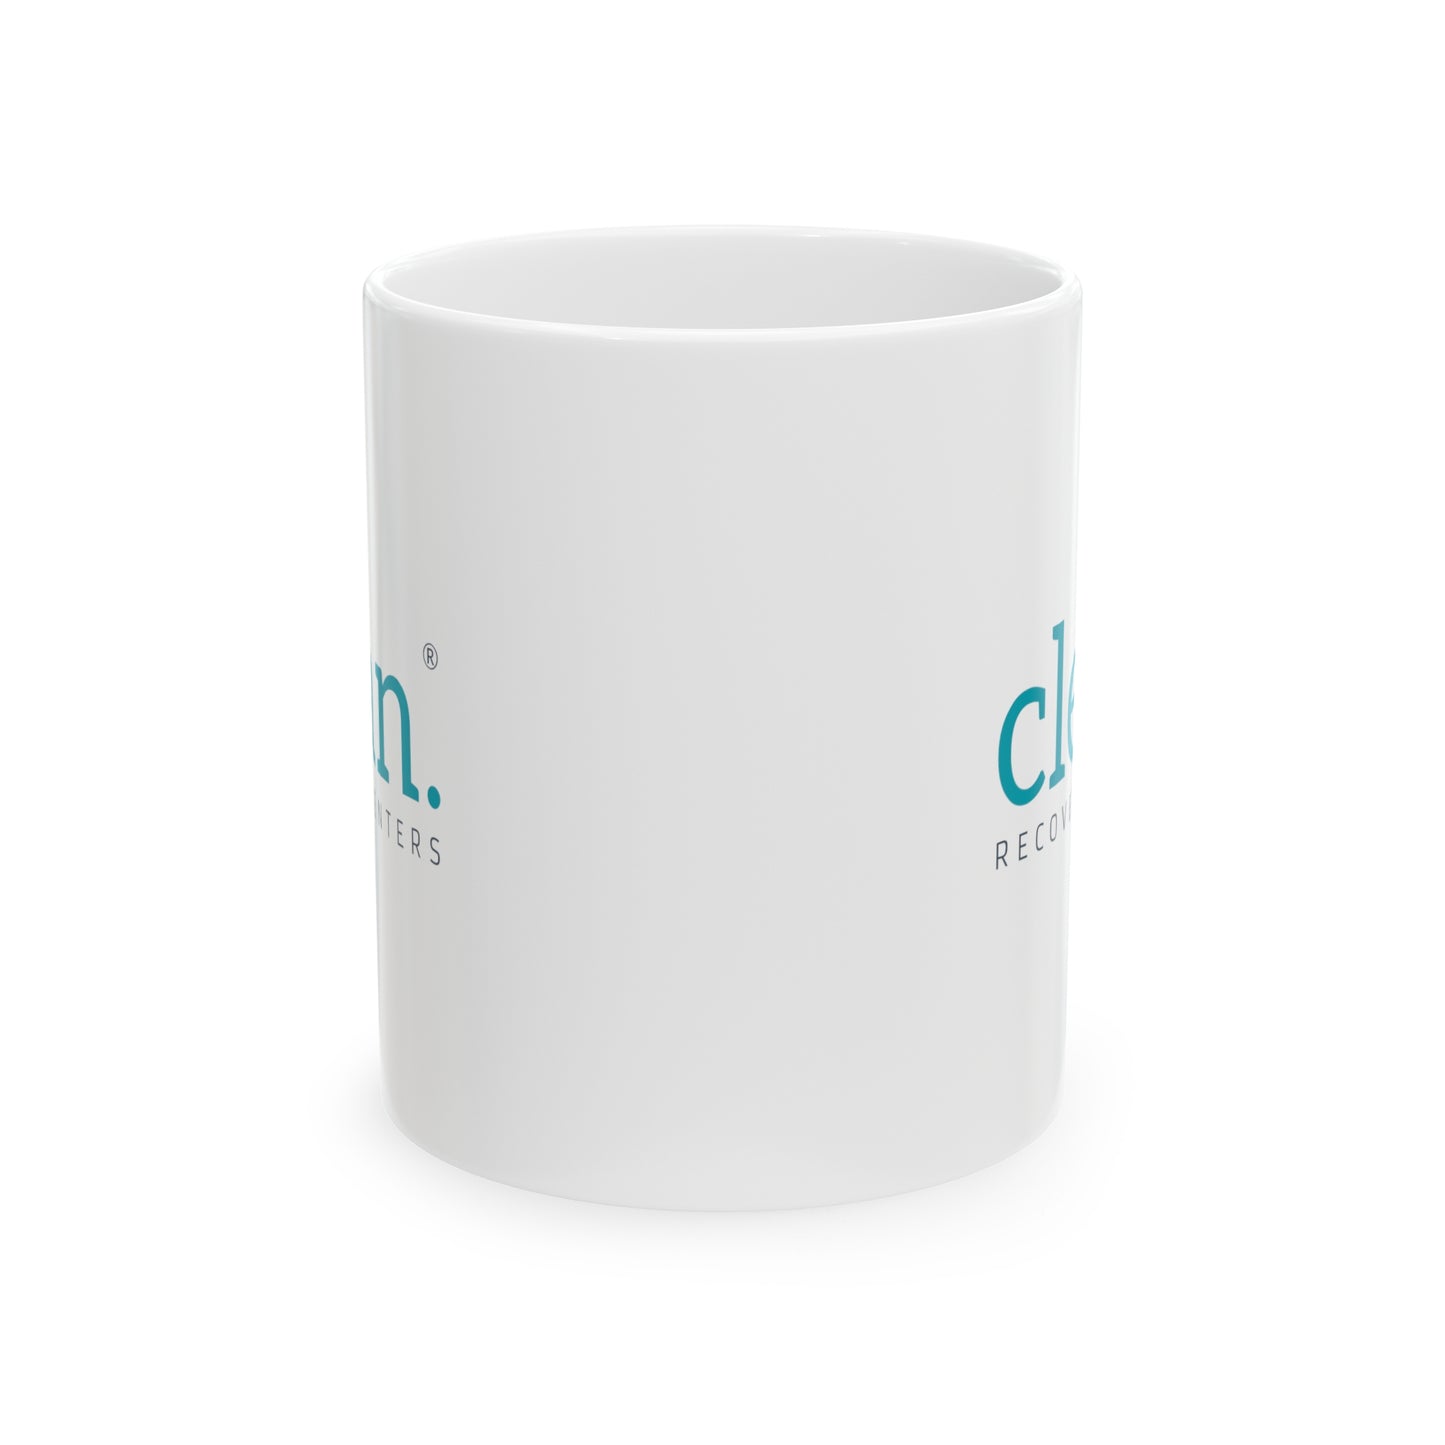 Clean Logo Ceramic Mug, 11oz